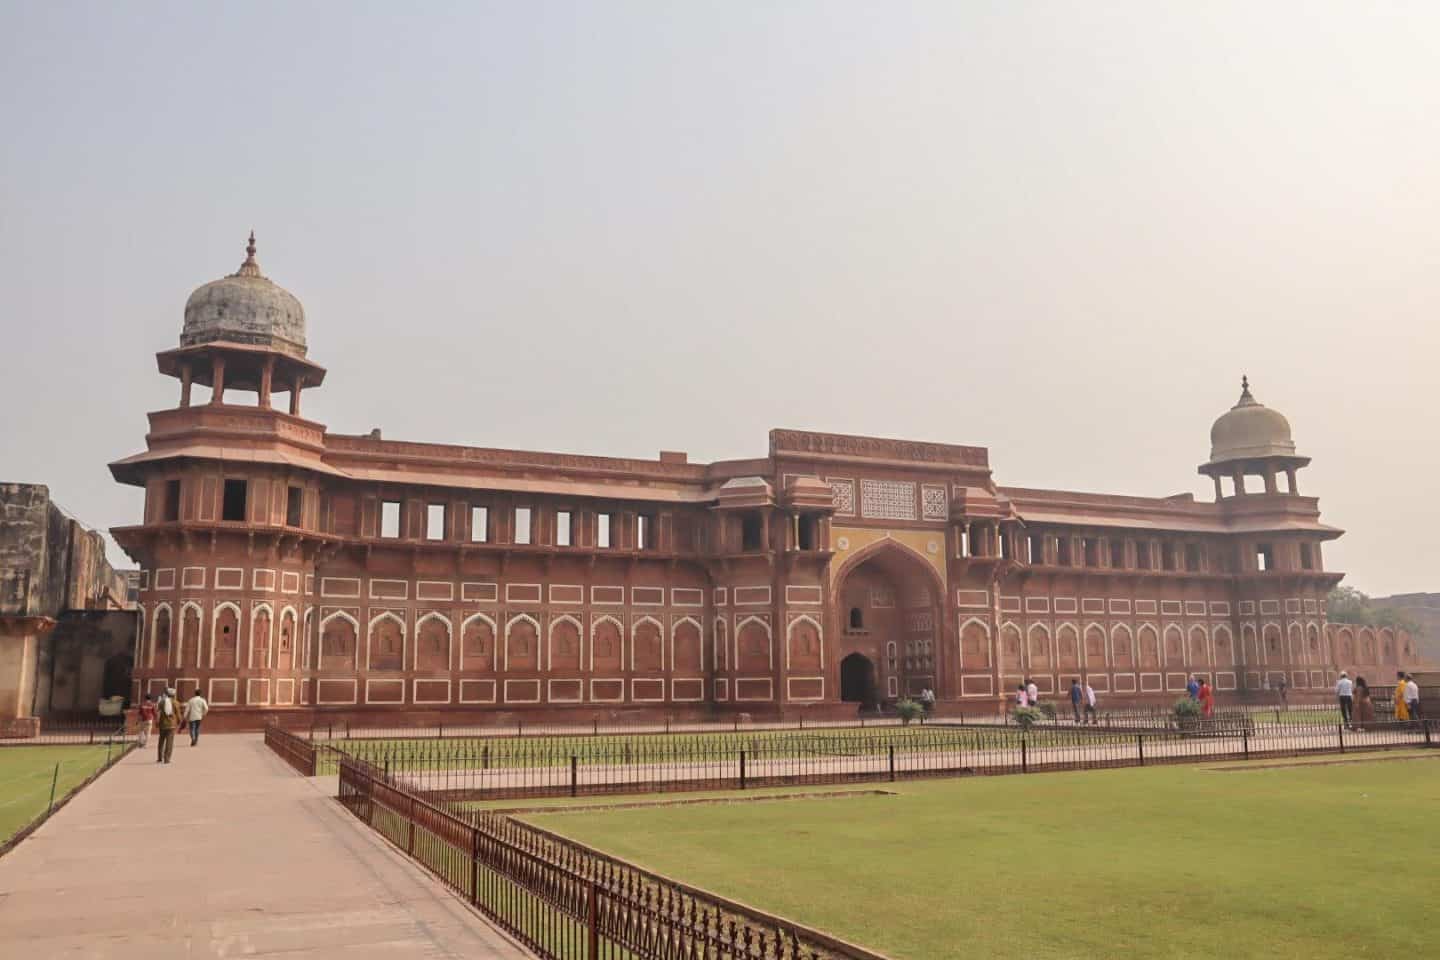 Agra Fort view of Taj Mahal